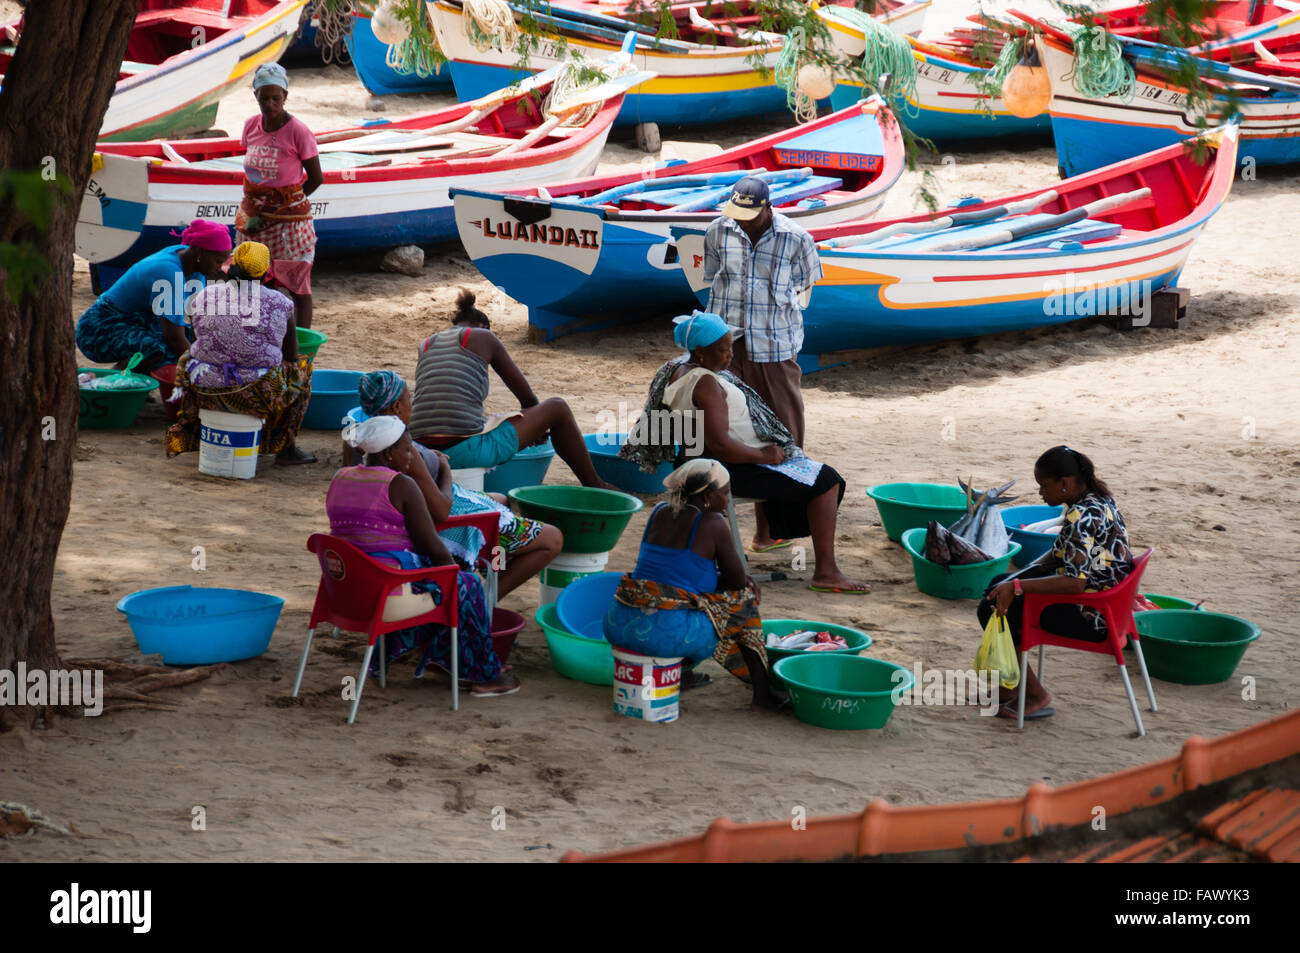 El pueblo africano hombres womean y barco con pescado en la playa de arena de Cabo verde Foto de stock